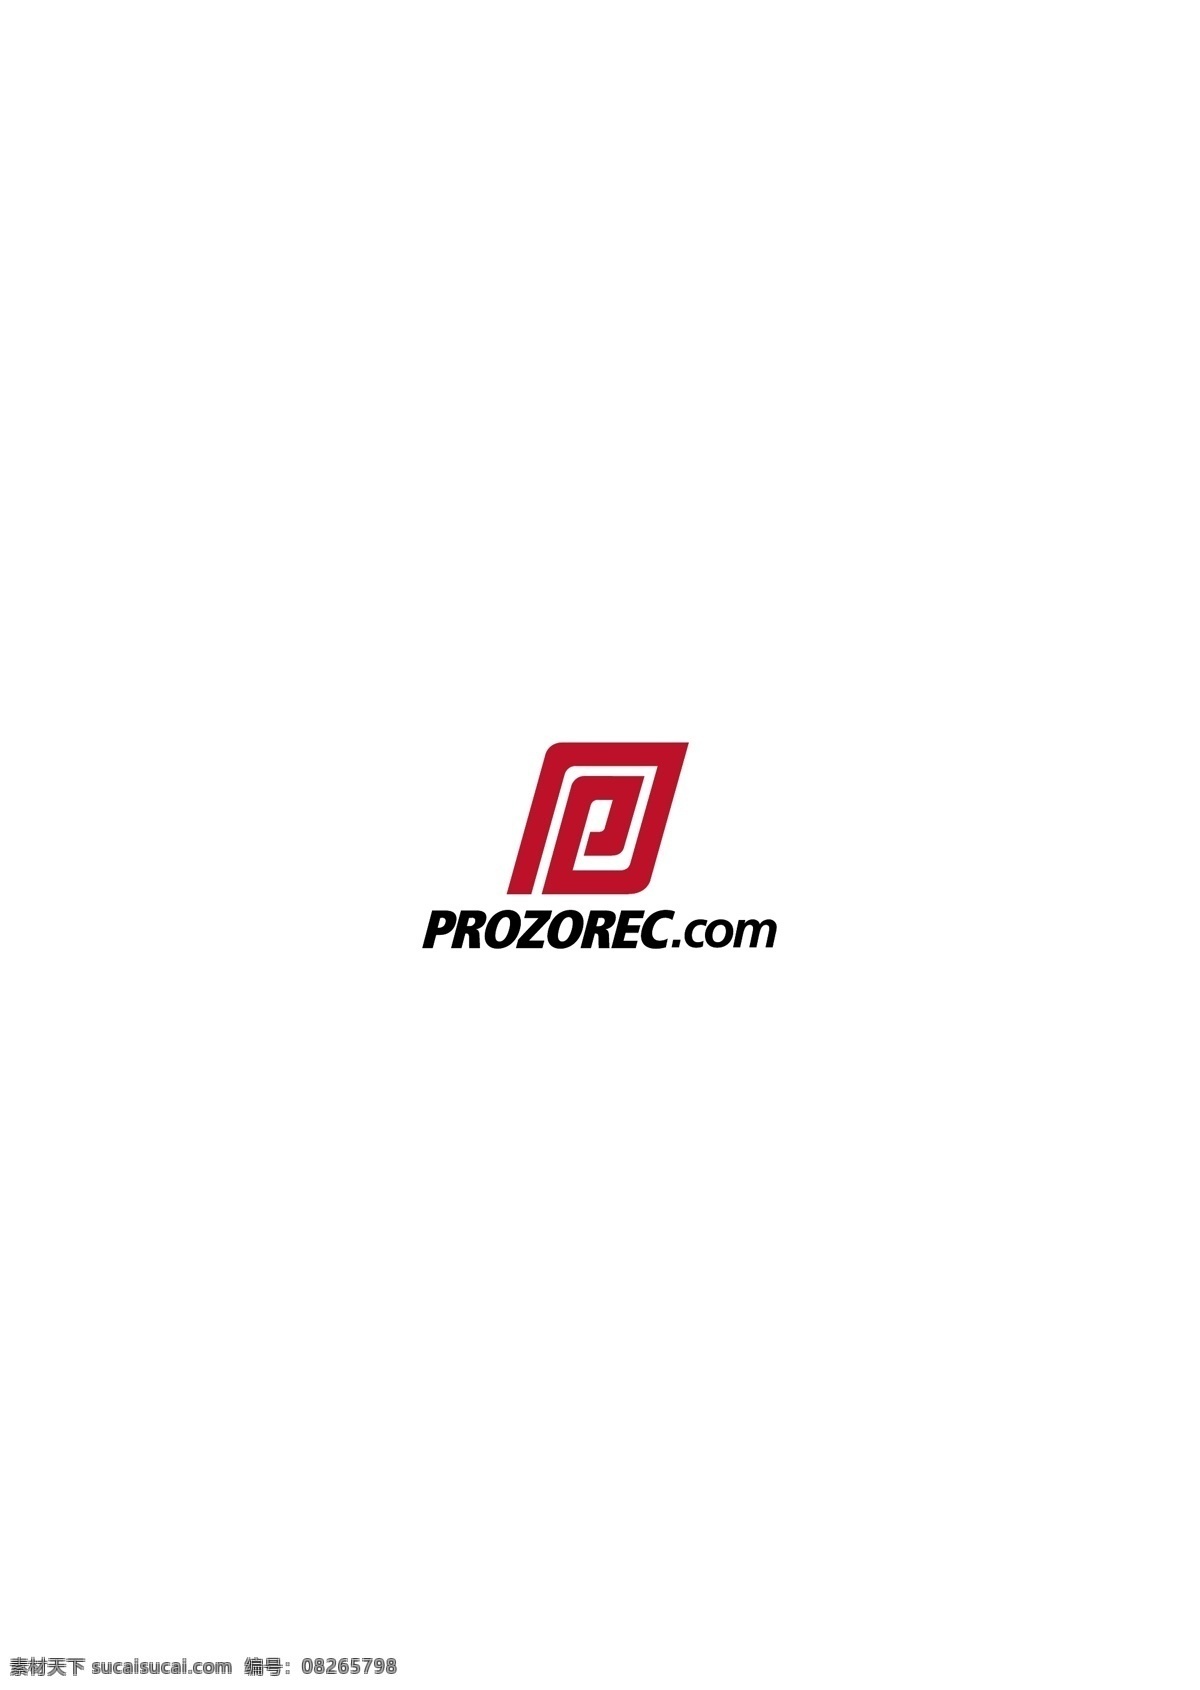 prozorec logo 设计欣赏 重工业 标志 标志设计 欣赏 矢量下载 网页矢量 商业矢量 logo大全 红色